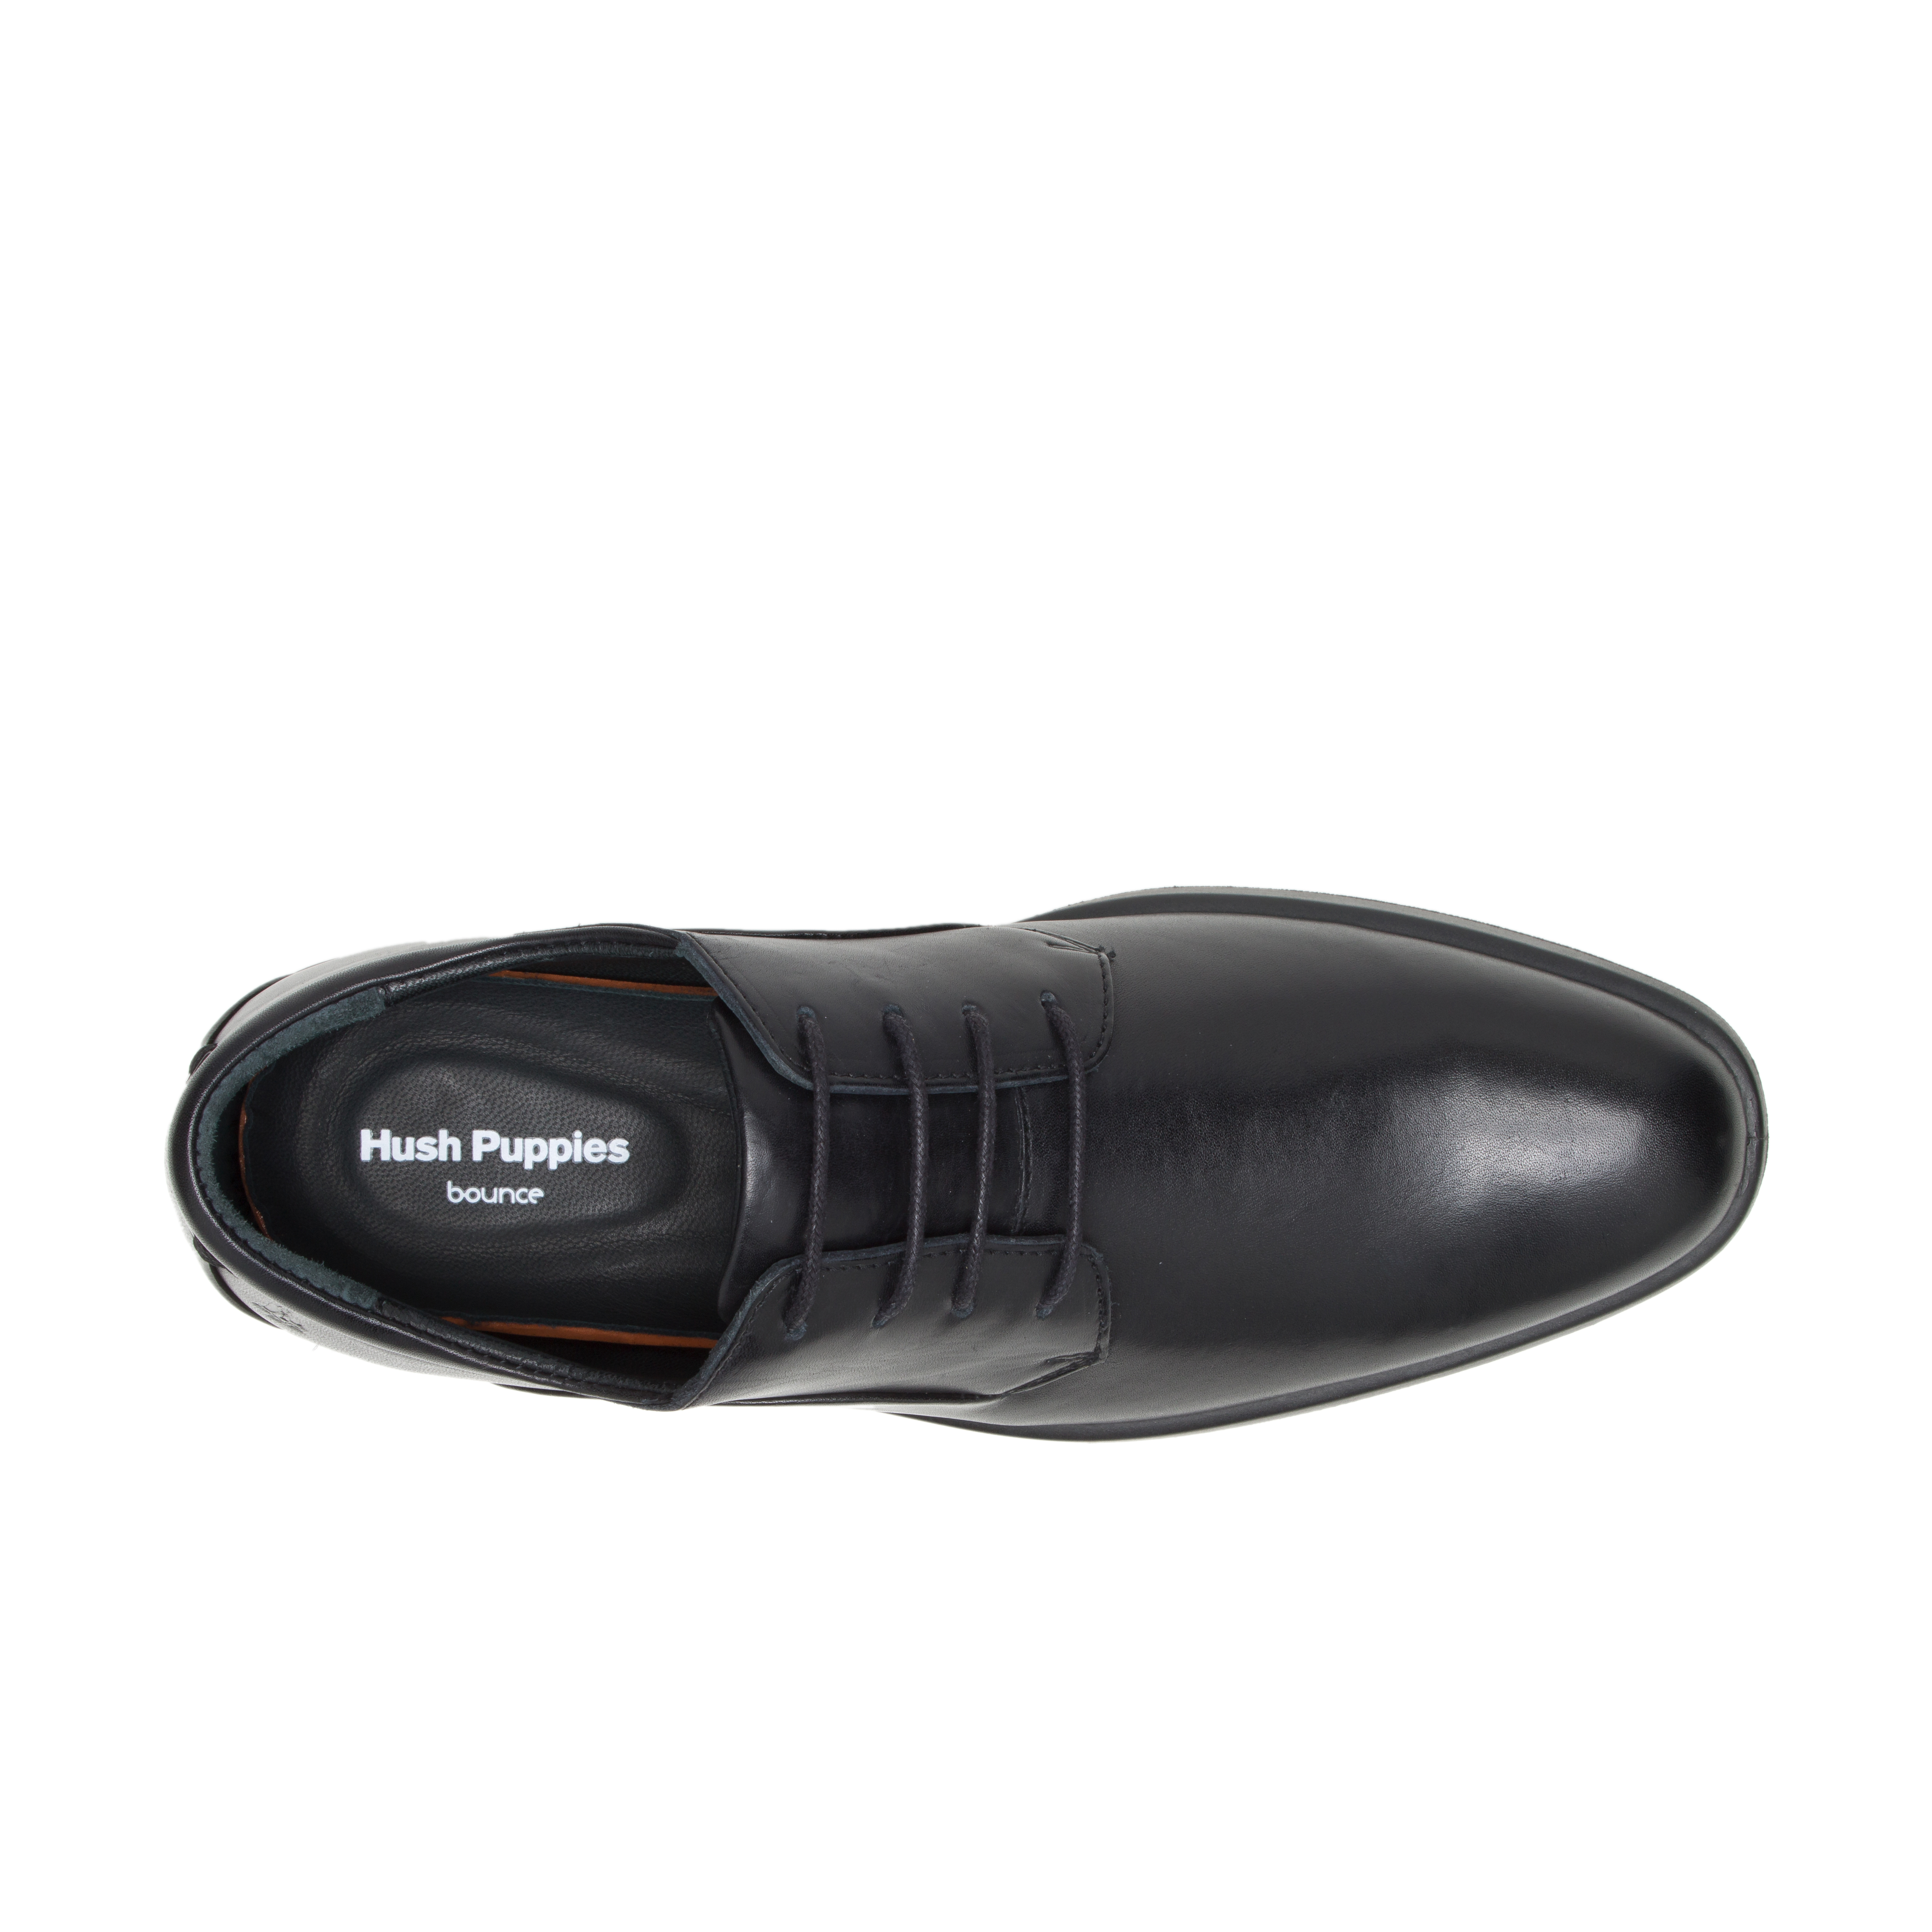 Ανδρικό παπούτσι κορδόνι Hush Puppies ΗΜ02160-001  VITRUS PT OXFORD